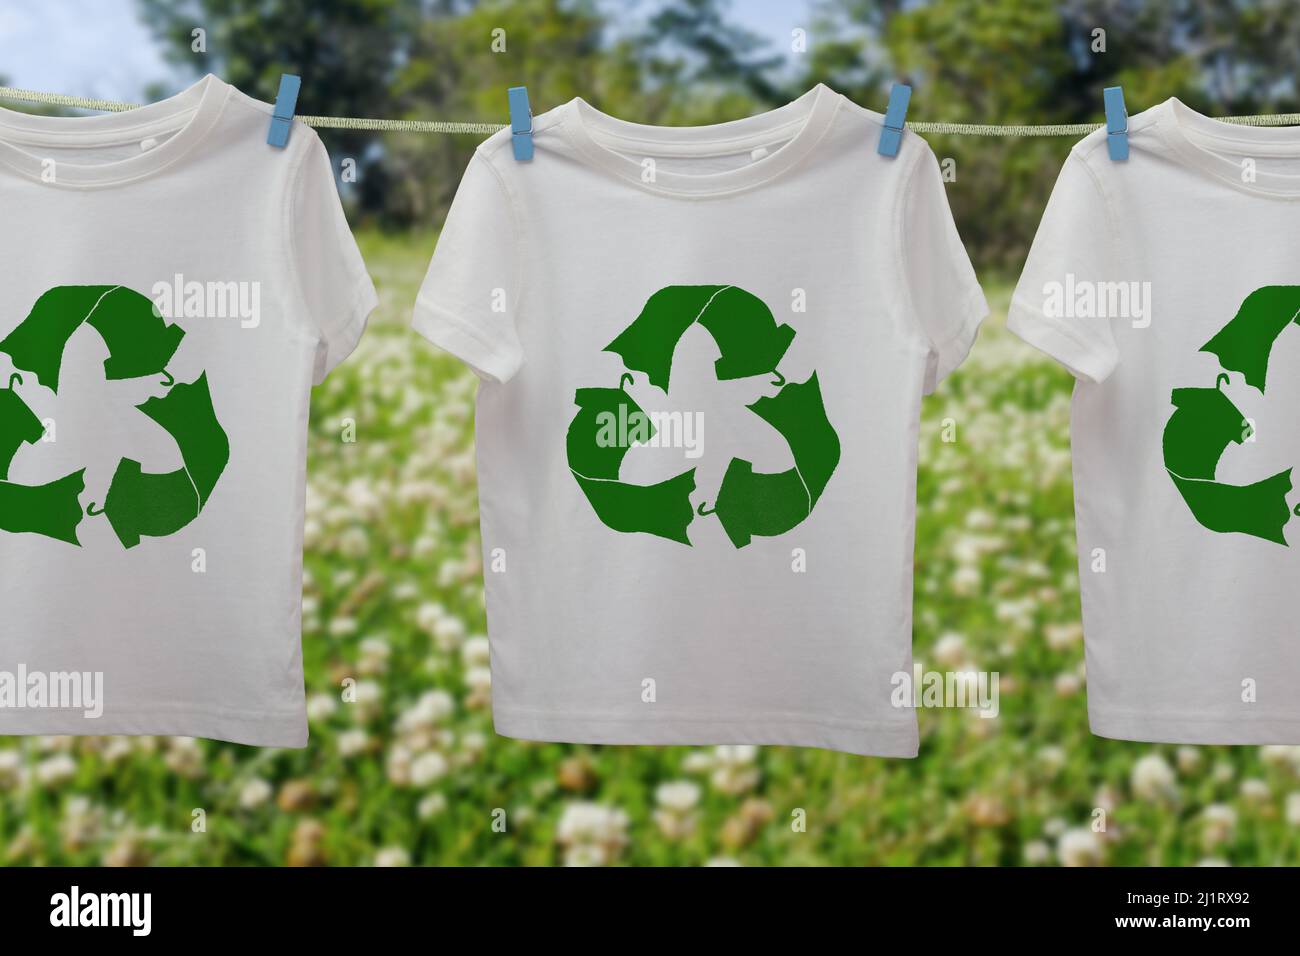 Icona del riciclaggio dei vestiti sulle t-shirt on line, riutilizzo sostenibile del concetto di moda, riciclaggio dei vestiti e tessuti per ridurre gli sprechi Foto Stock